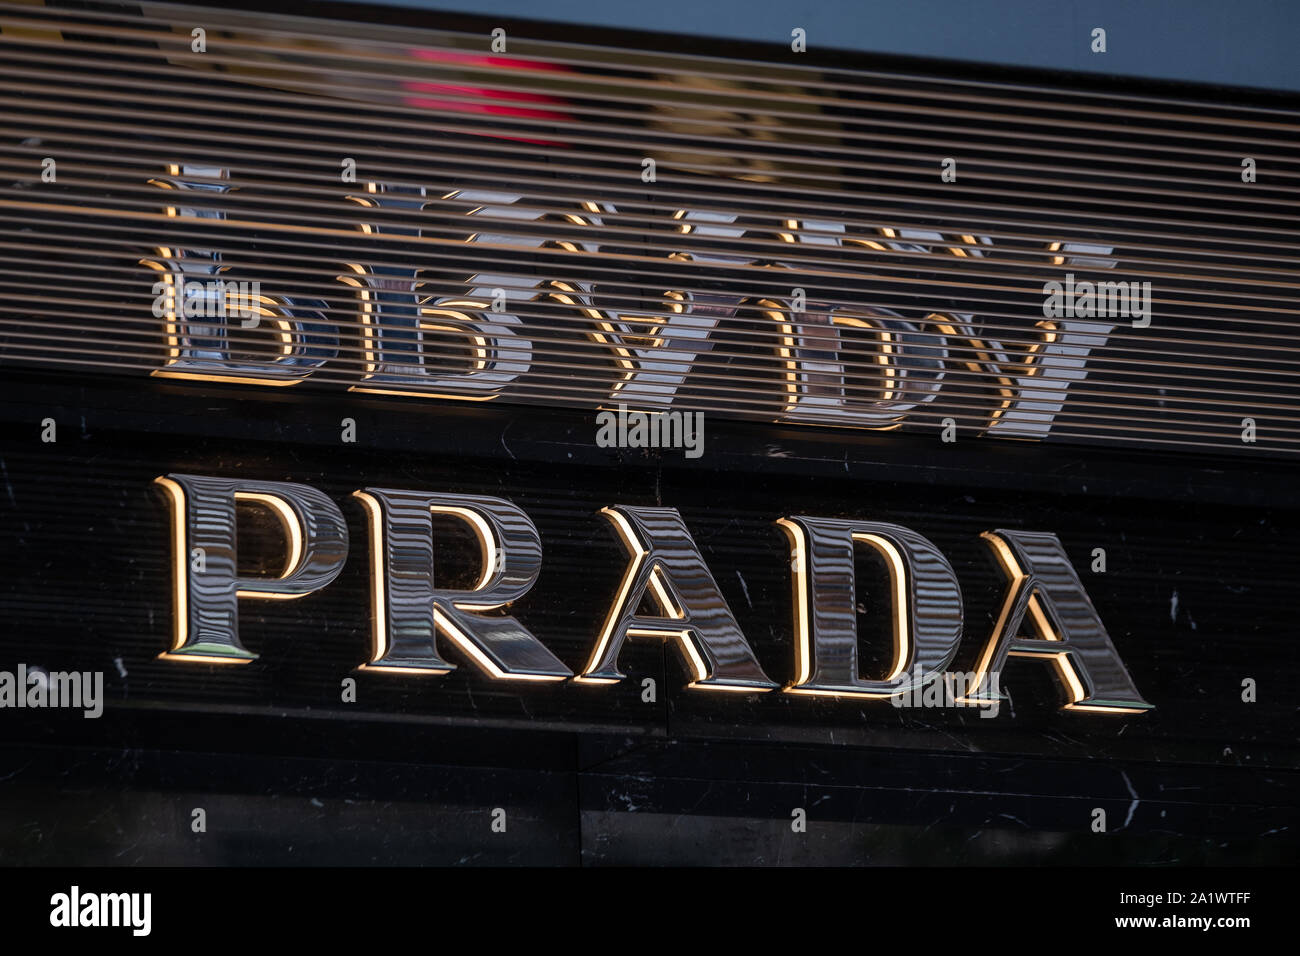 El logotipo de la marca Prada en la fachada del almacén Fotografía de stock  - Alamy